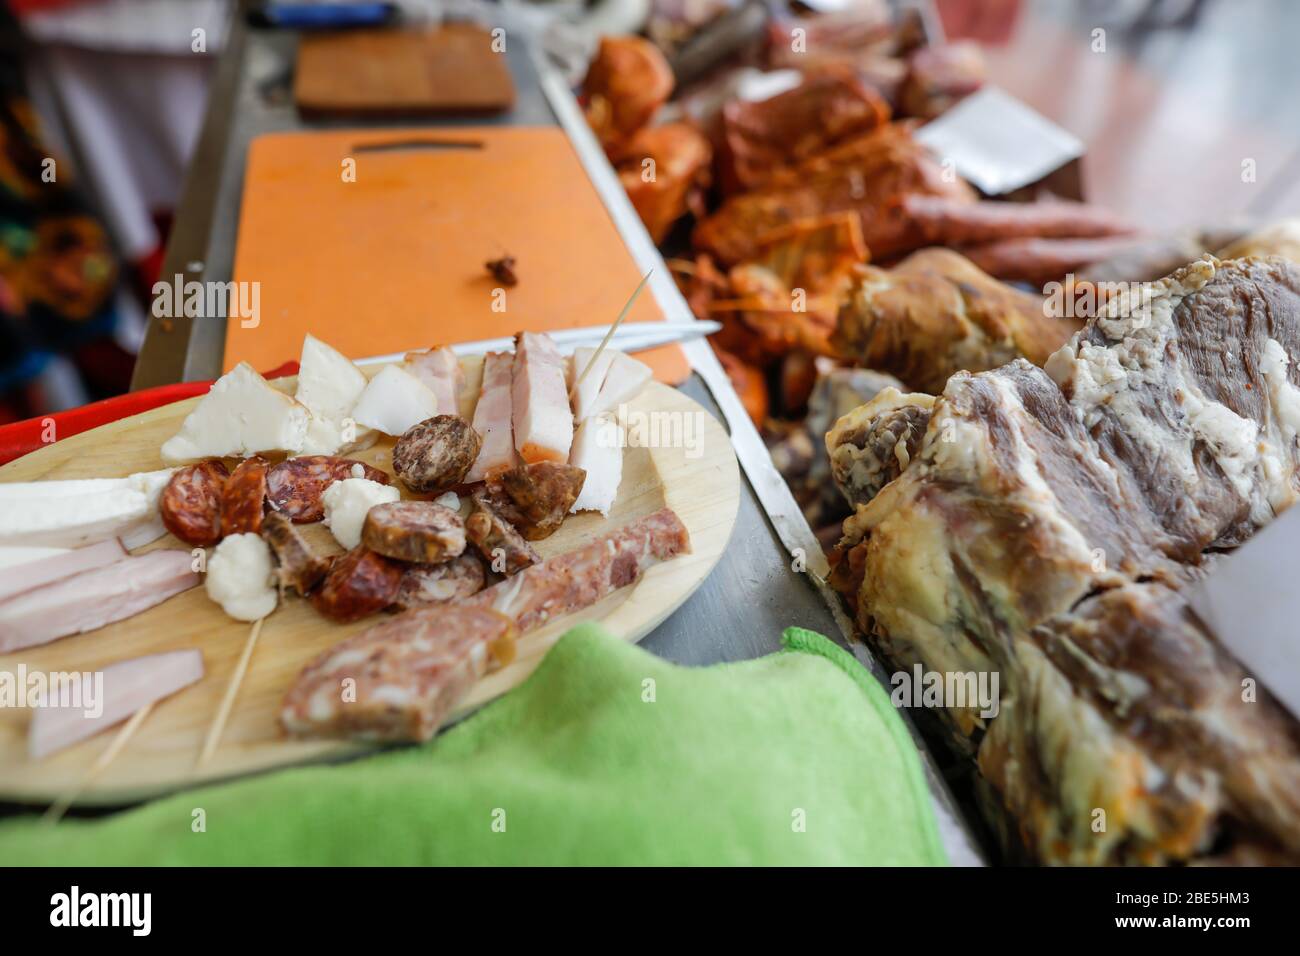 Immagine di profondità di campo (fuoco selettivo) con prodotti tradizionali rumeni a base di carne, principalmente di maiale, in esposizione in un mercato. Foto Stock